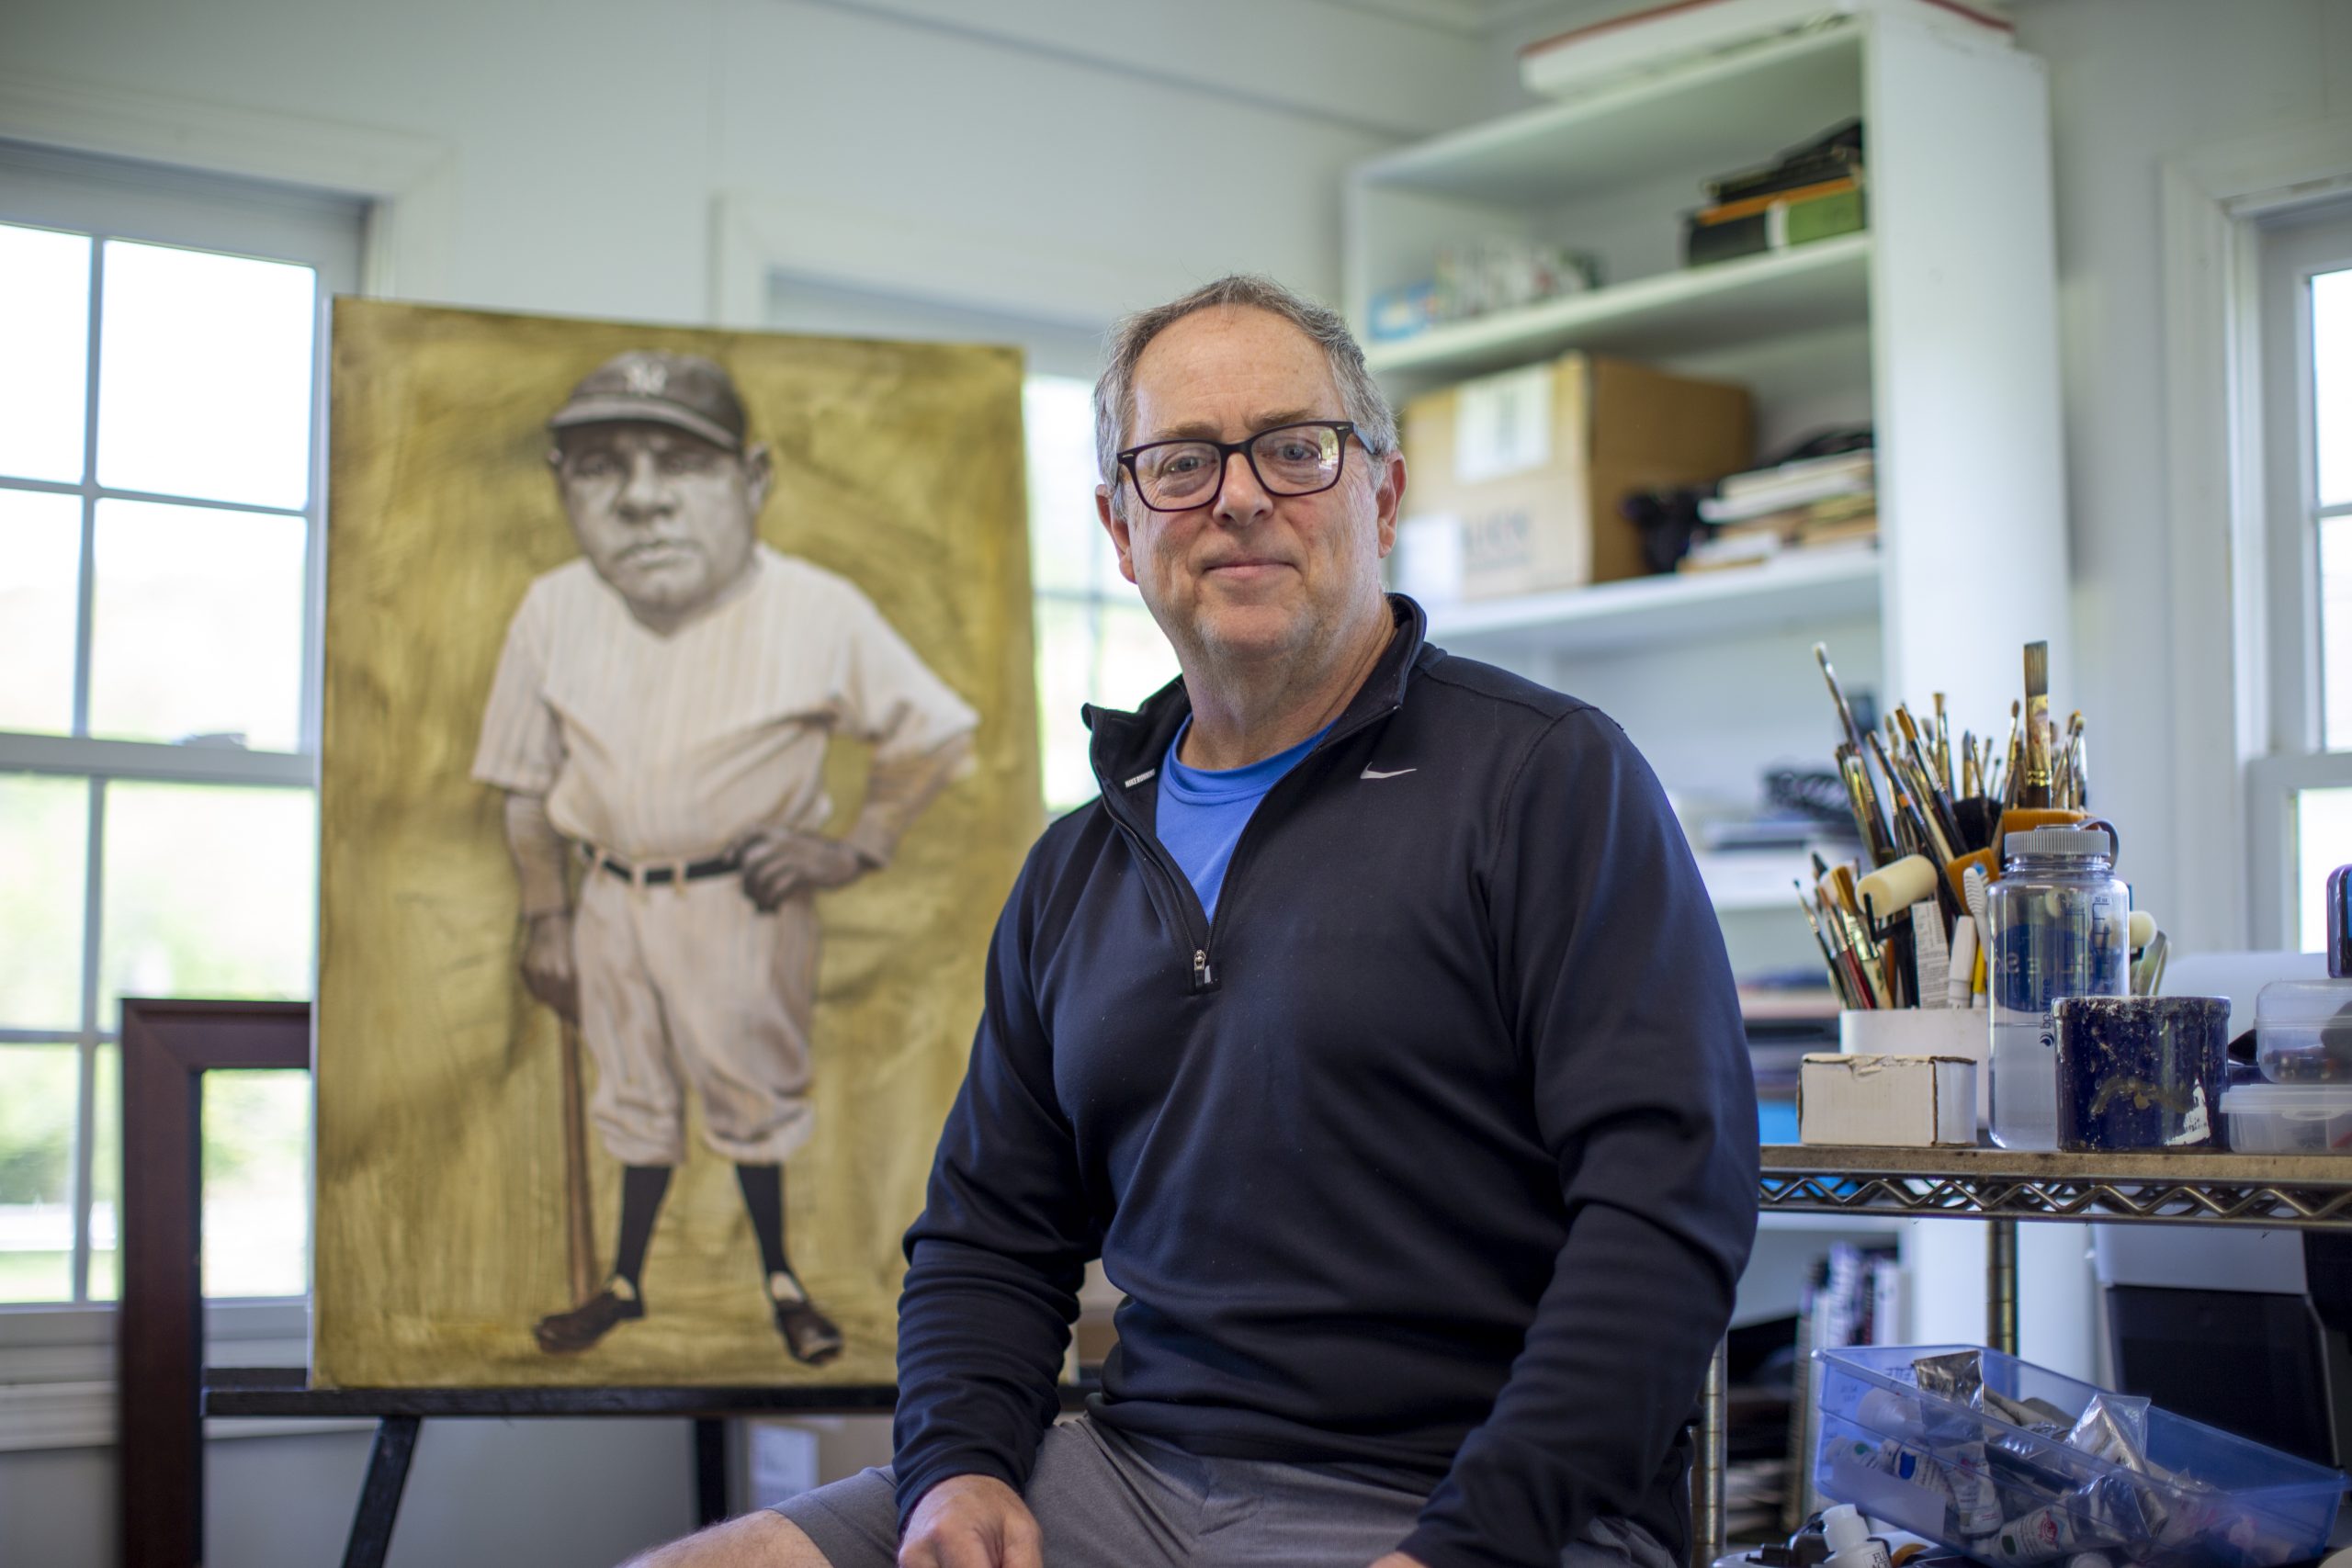 Baseball Art – NOAH STOKES ART